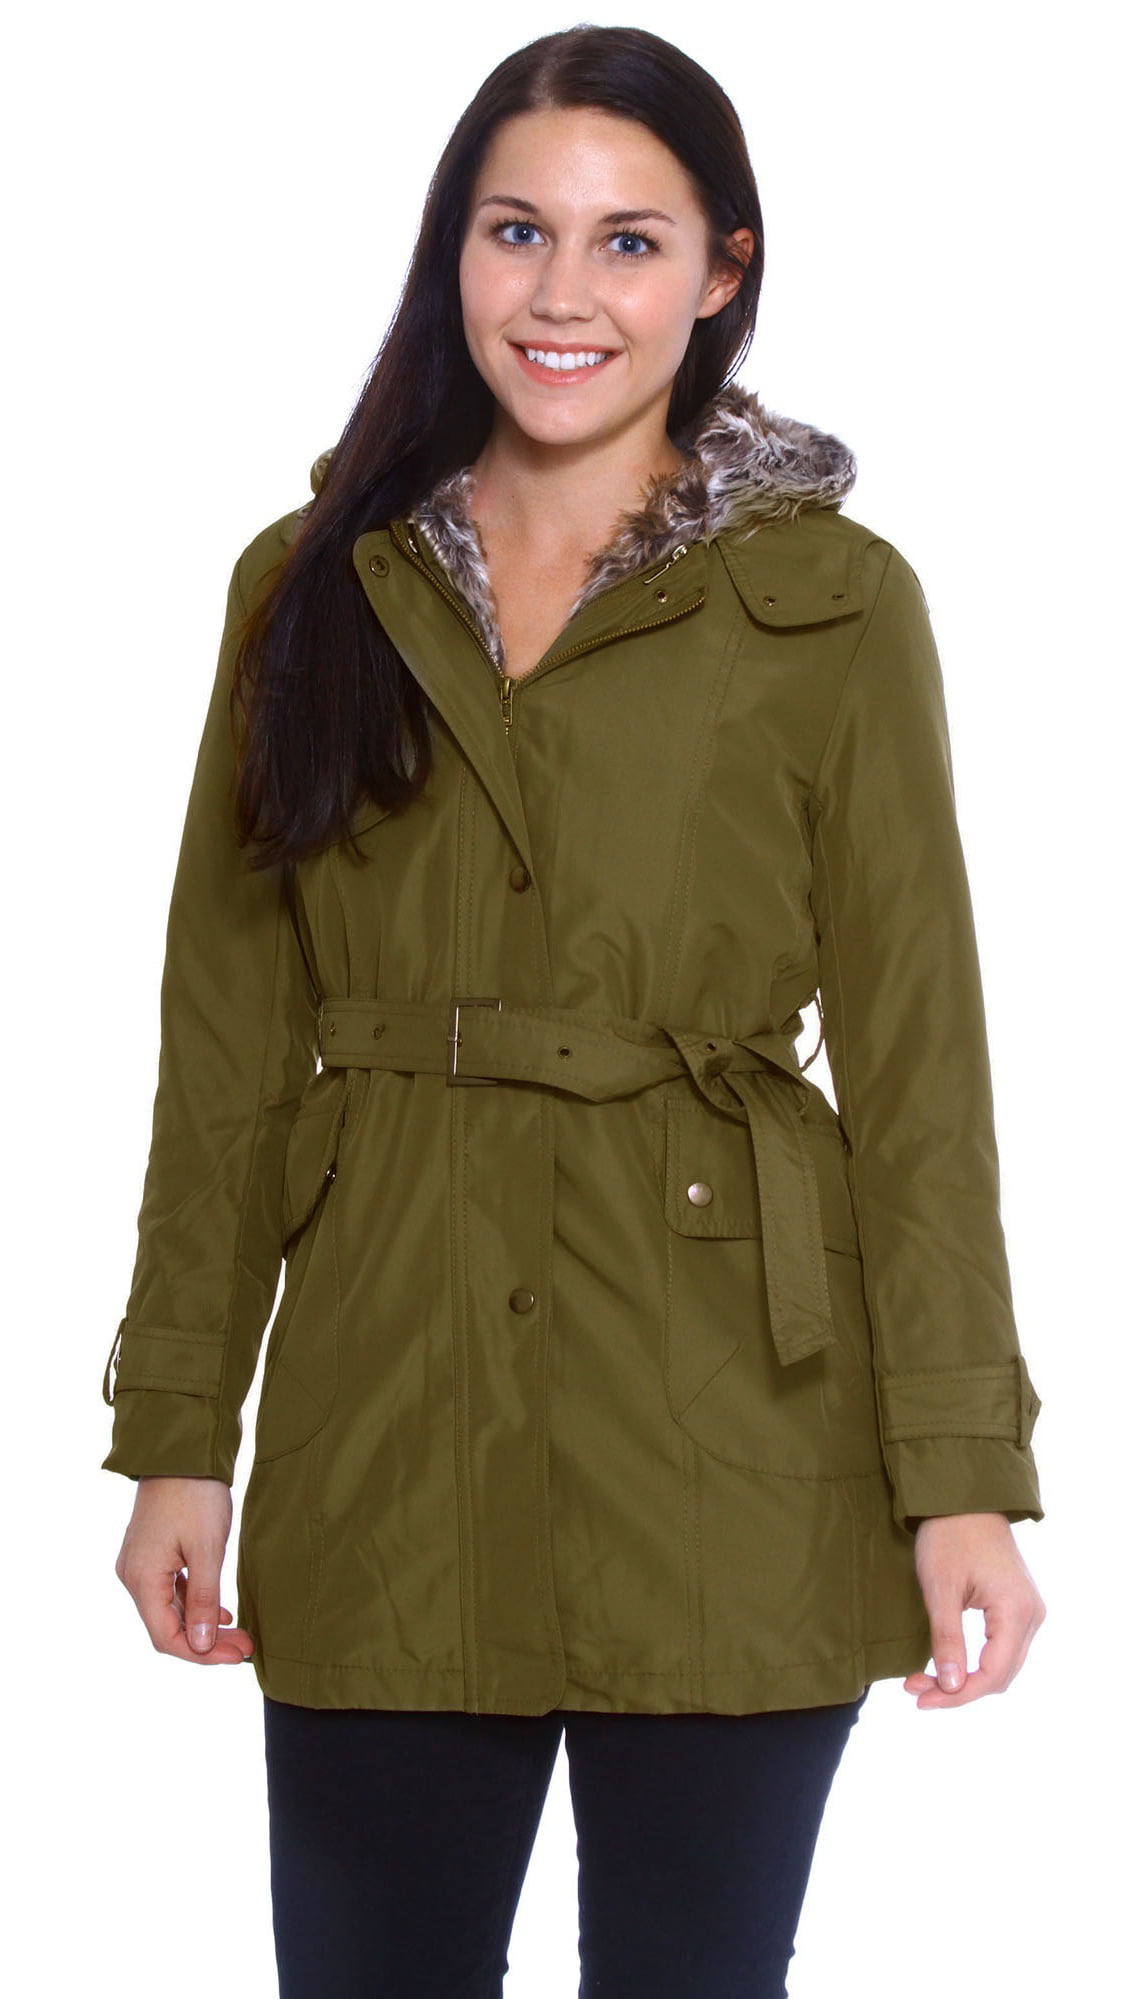 Simplicity - Zicac Women's Thicken Fleece Faux Fur Warm Winter Coat ...